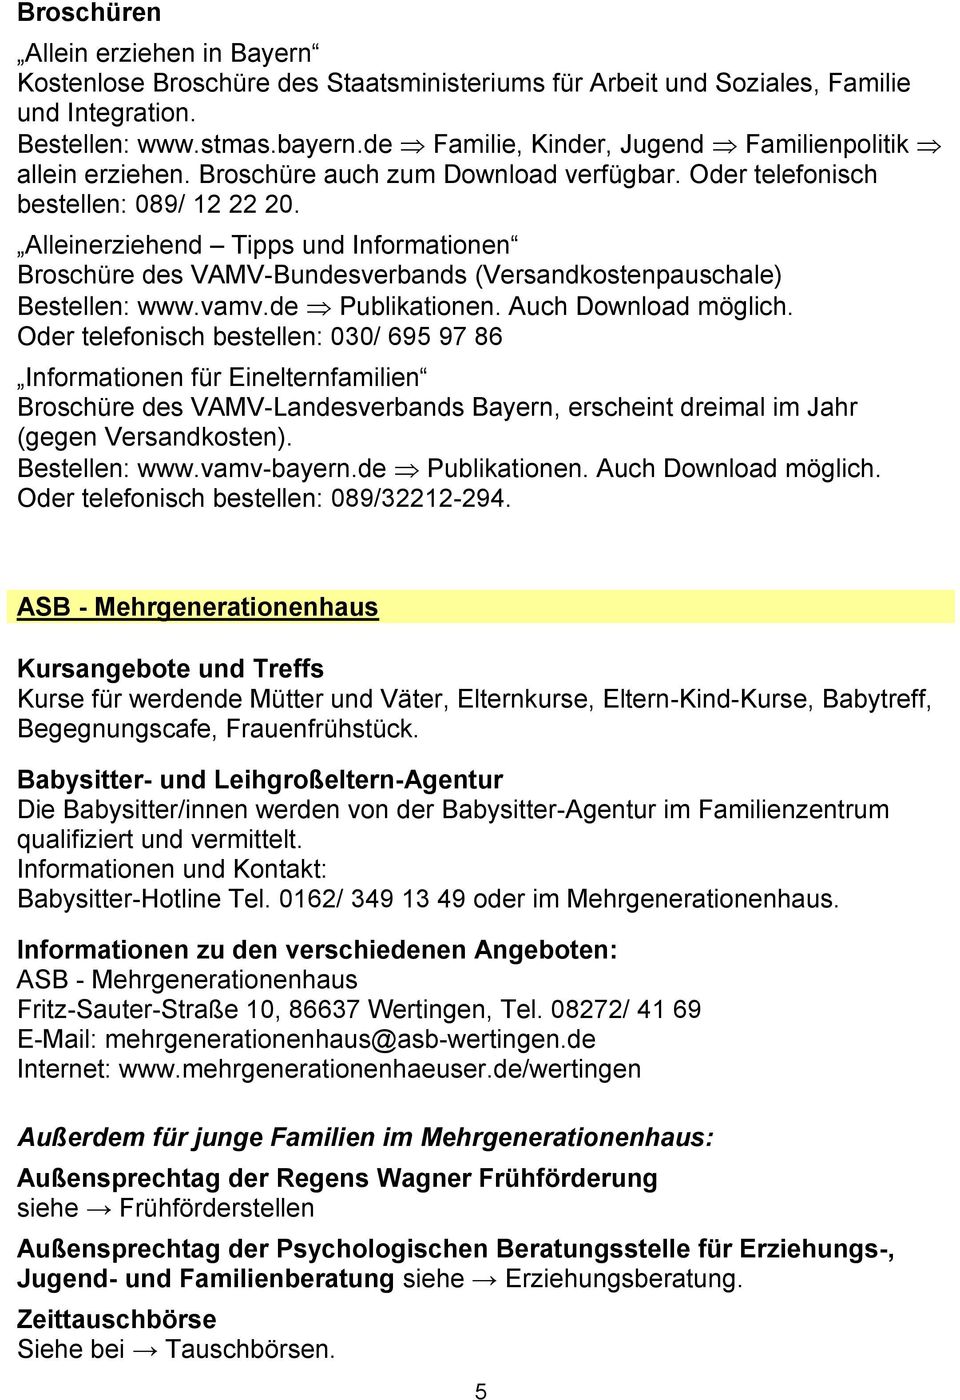 Alleinerziehend Tipps und Informationen Broschüre des VAMV-Bundesverbands (Versandkostenpauschale) Bestellen: www.vamv.de Publikationen. Auch Download möglich.